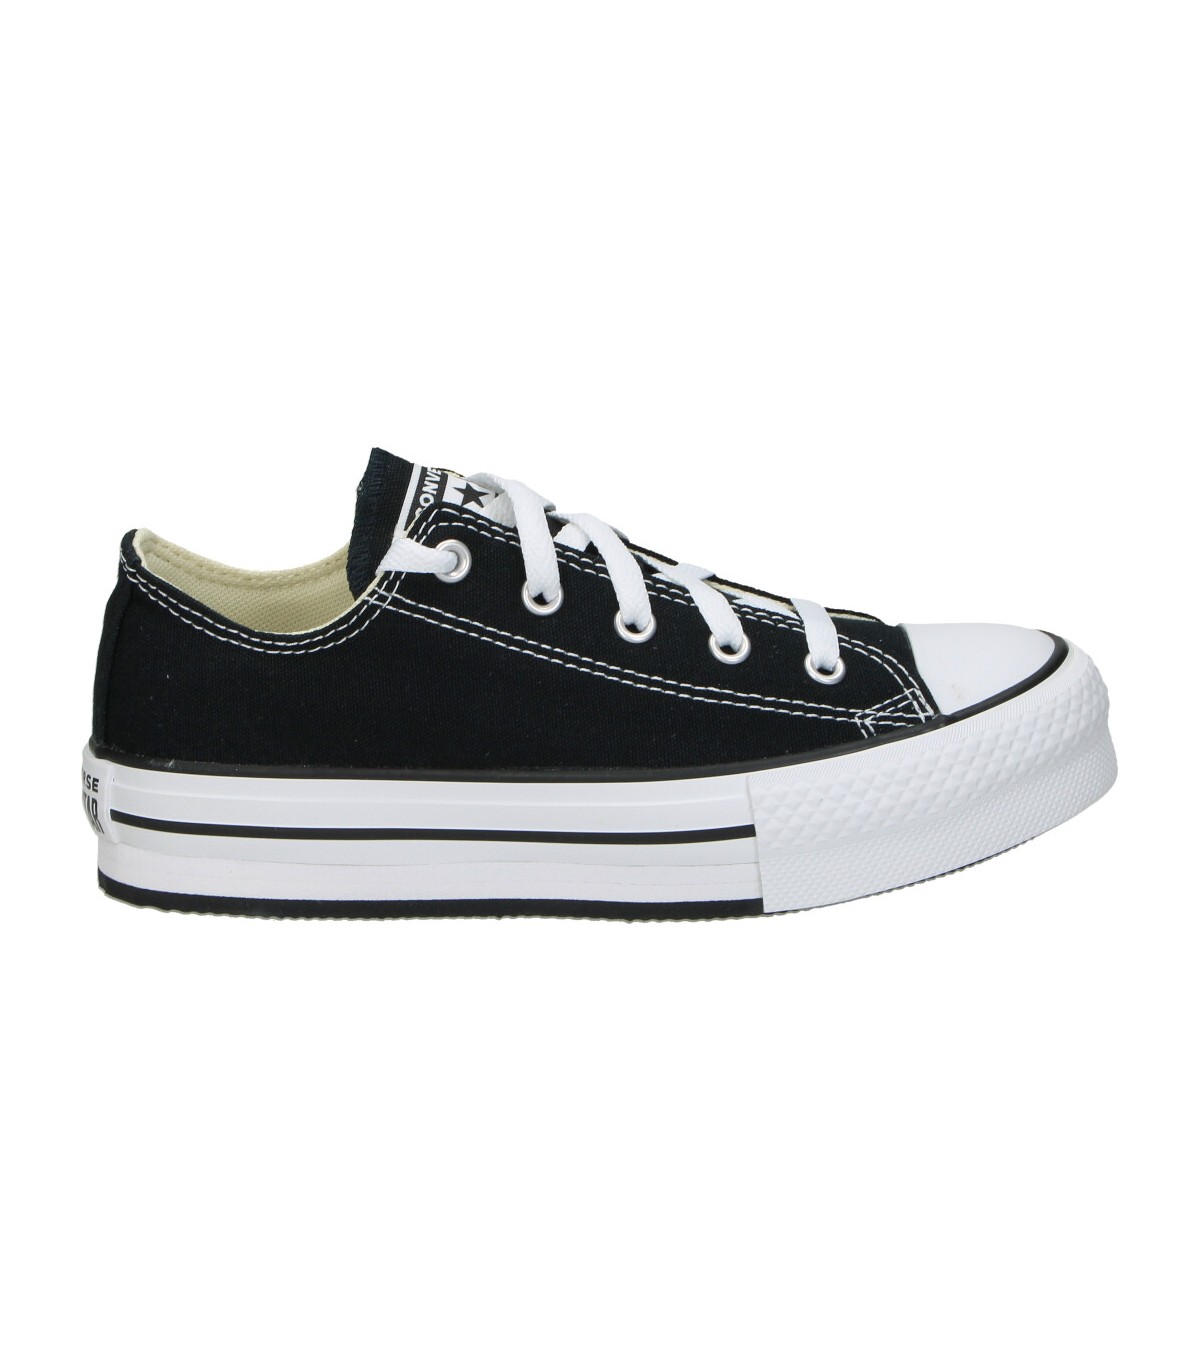 Zapatillas de niño 372861c-001 color negro